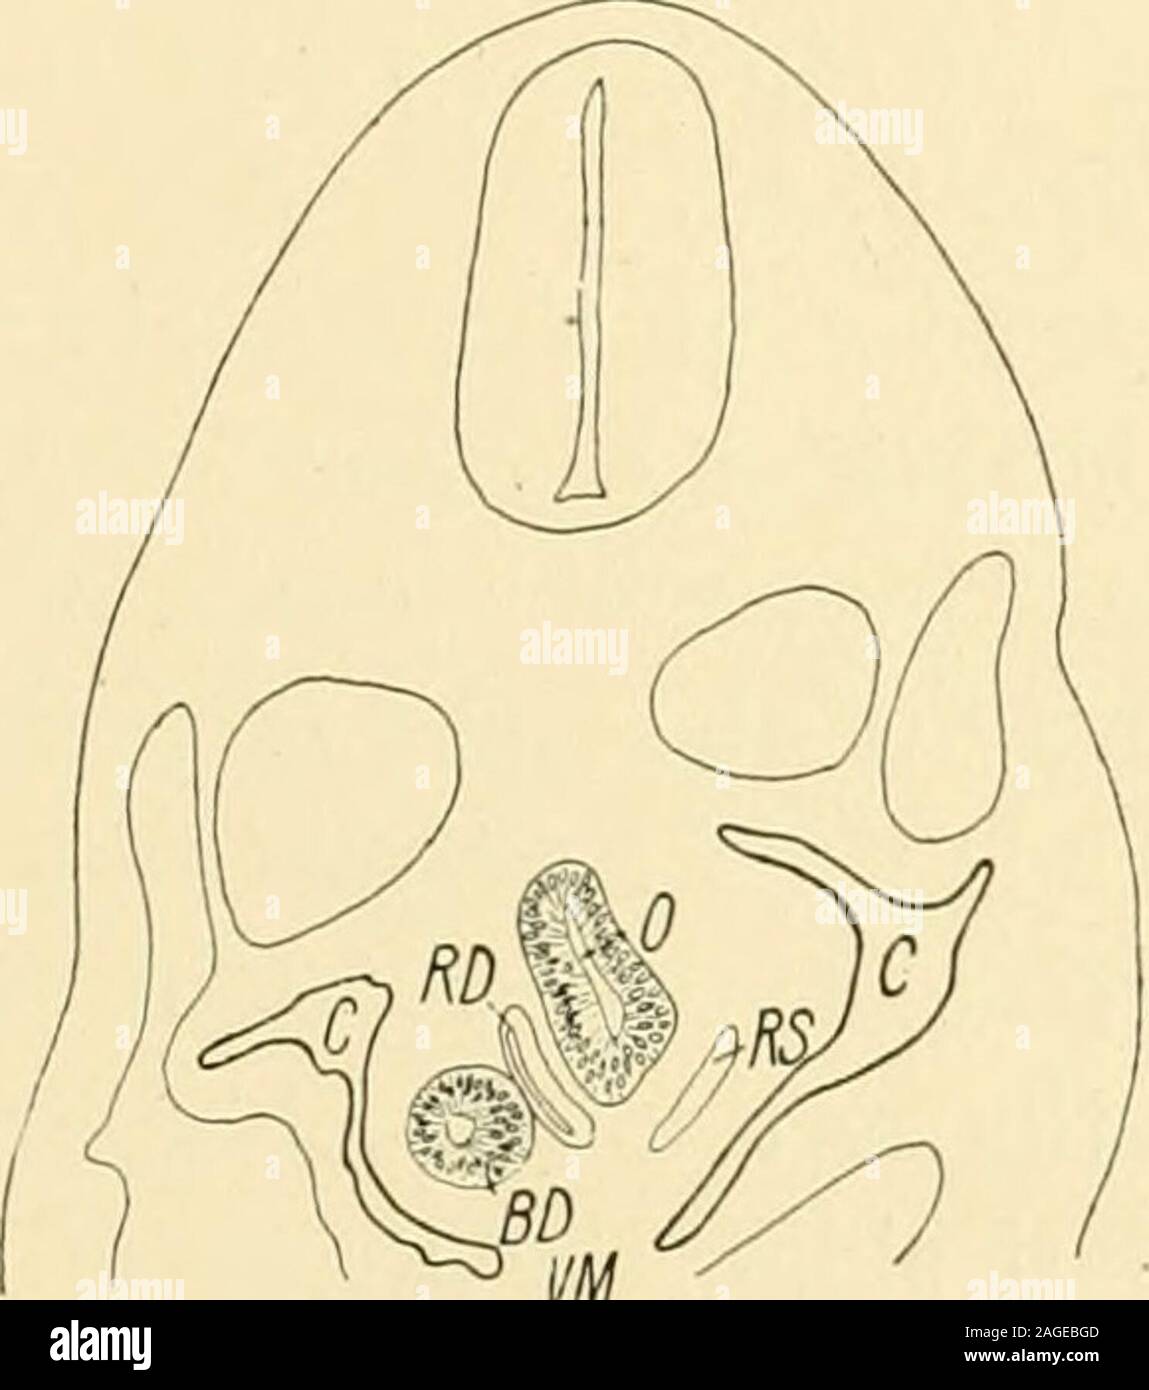 . El American journal de anatomía. 39 precoz como yo poseemos etapas posteriores donde los dos sistemas están en opencommunication a un nivel inferior que se muestra en esta muestra. En delnivel donde comienza el mesocardio posterior (Fig. 7 VM), el epithe-Lium que recubren el intestino se avance y columnar consiste, excepto en los ángulos dorsal ventraland, generalmente de una doble capa de células. En el anlage de thelungs (Fig. 8), que es ligeramente superior y muestra un papel más activo-netic karyoki proceso. Una capa de endoblast similares se extiende en el primitivebronchi. En las puntas, la división celular está avanzando rápidamente. El Foto de stock